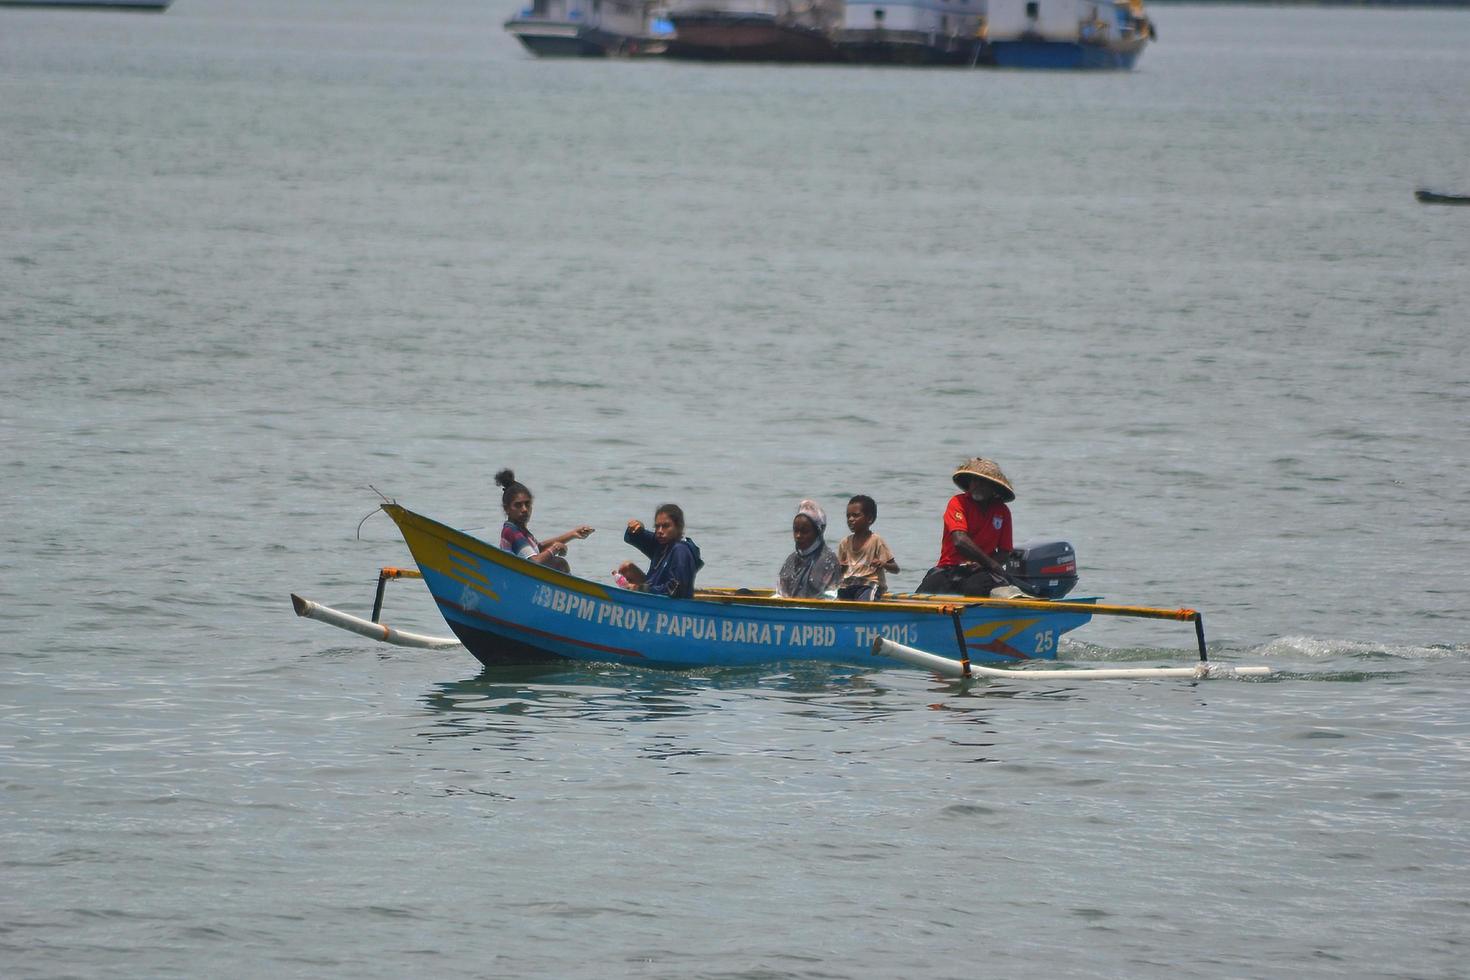 sorong, West Papoea, Indonesië, 2021. dorpeling die de zee oversteekt met houten boot. foto